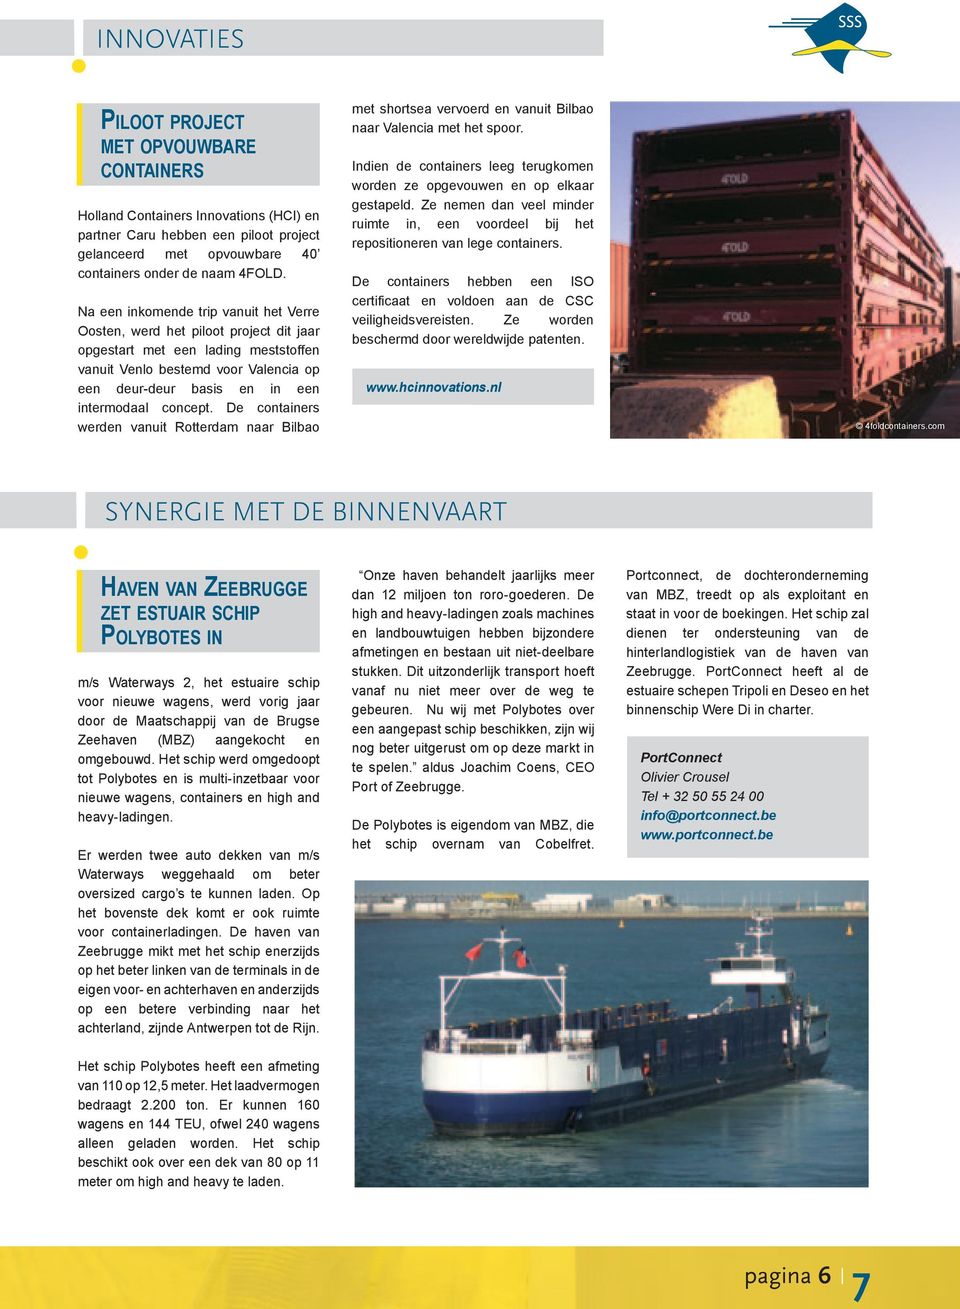 concept. De containers werden vanuit Rotterdam naar Bilbao met shortsea vervoerd en vanuit Bilbao naar Valencia met het spoor.